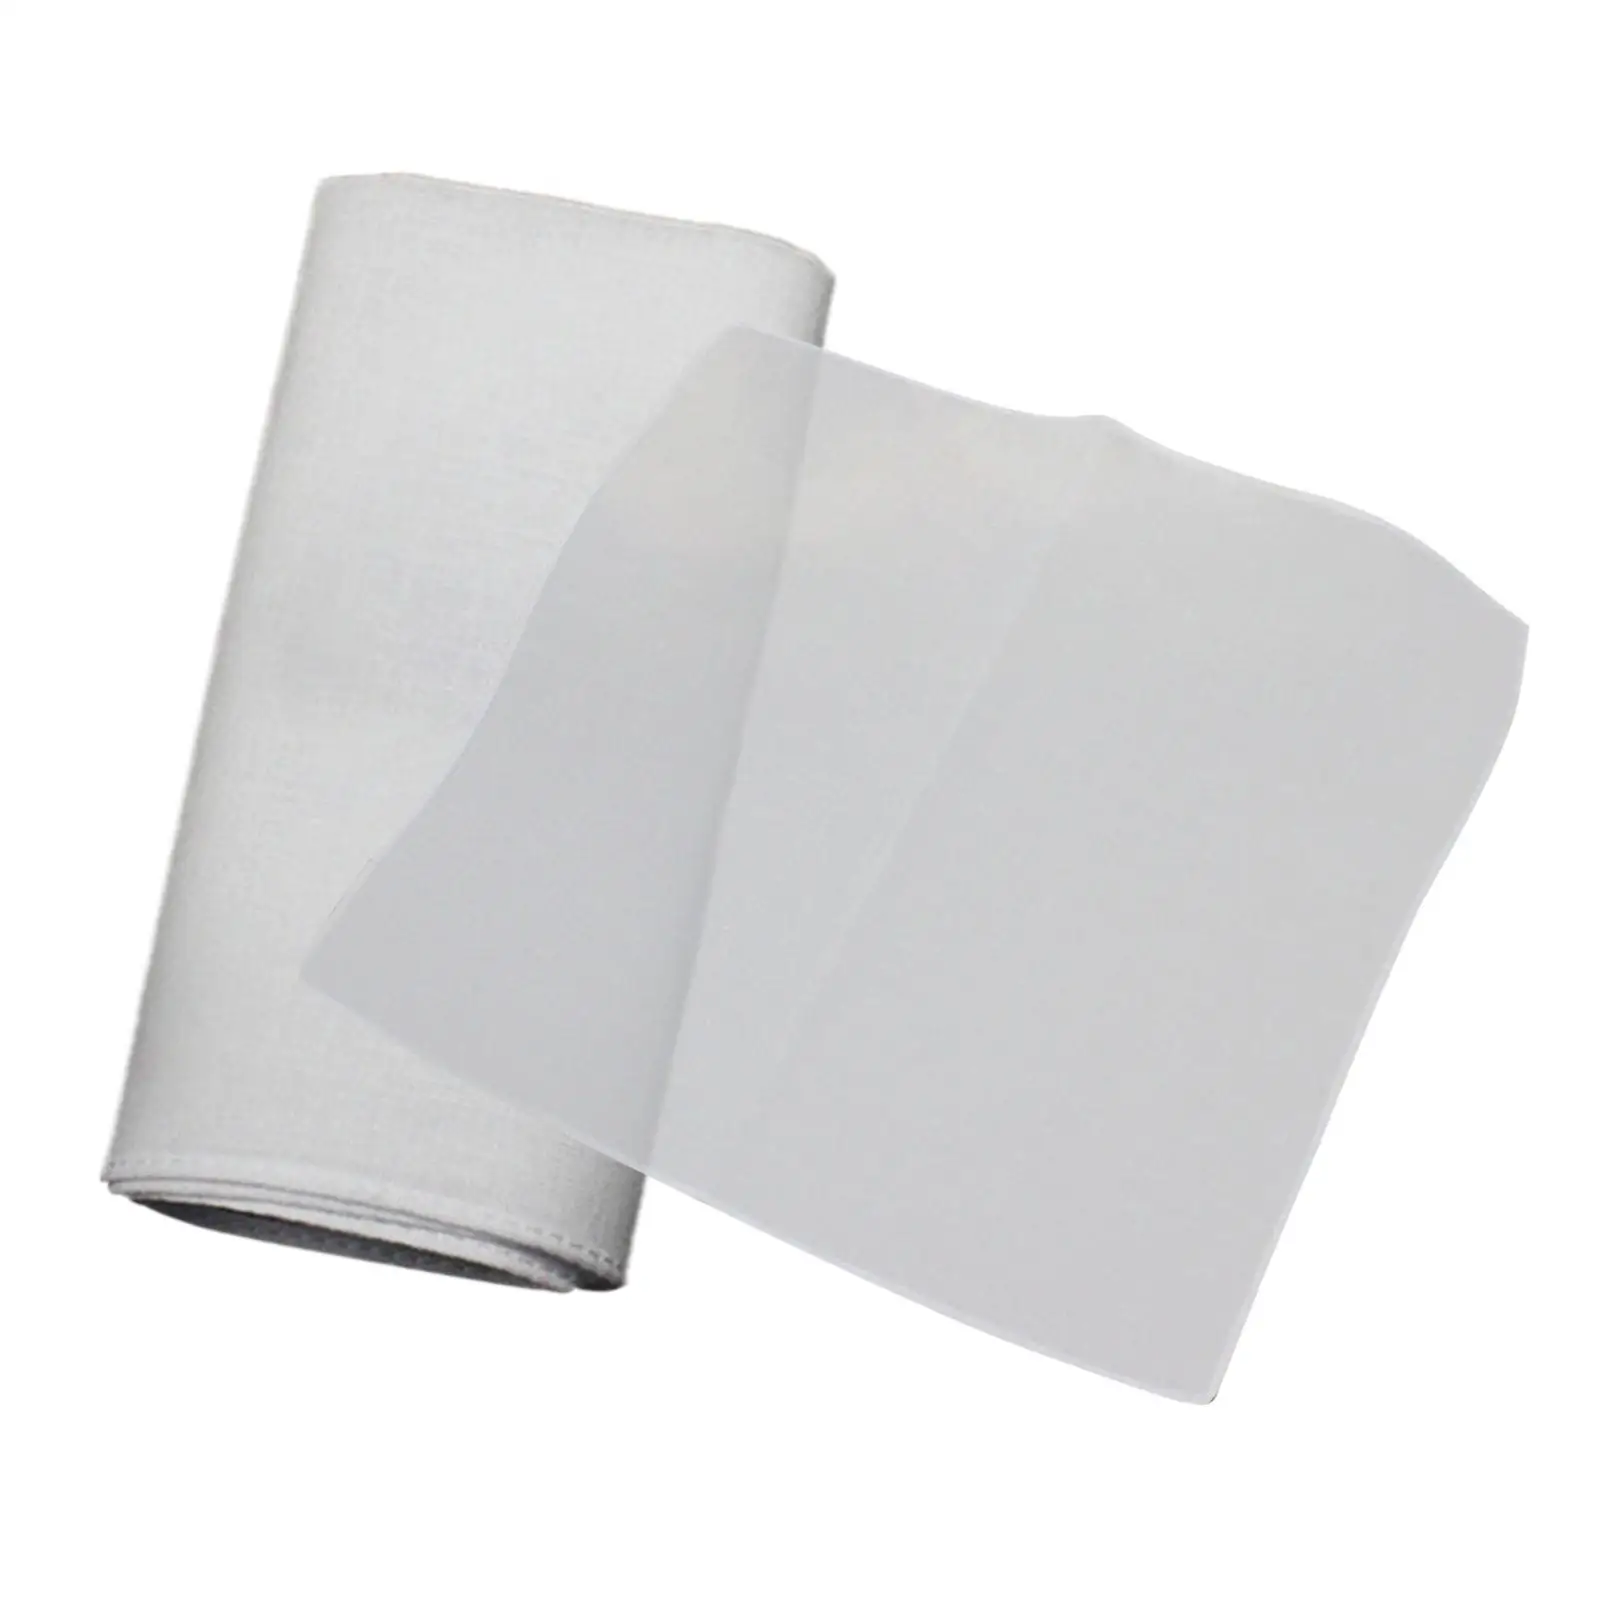 10Pcs Pure White Handkerchiefs for Men Suit Soft Pure Cotton Solid Color 10 inch Pocket Squares for Tie Dye Crafts Supplies DIY